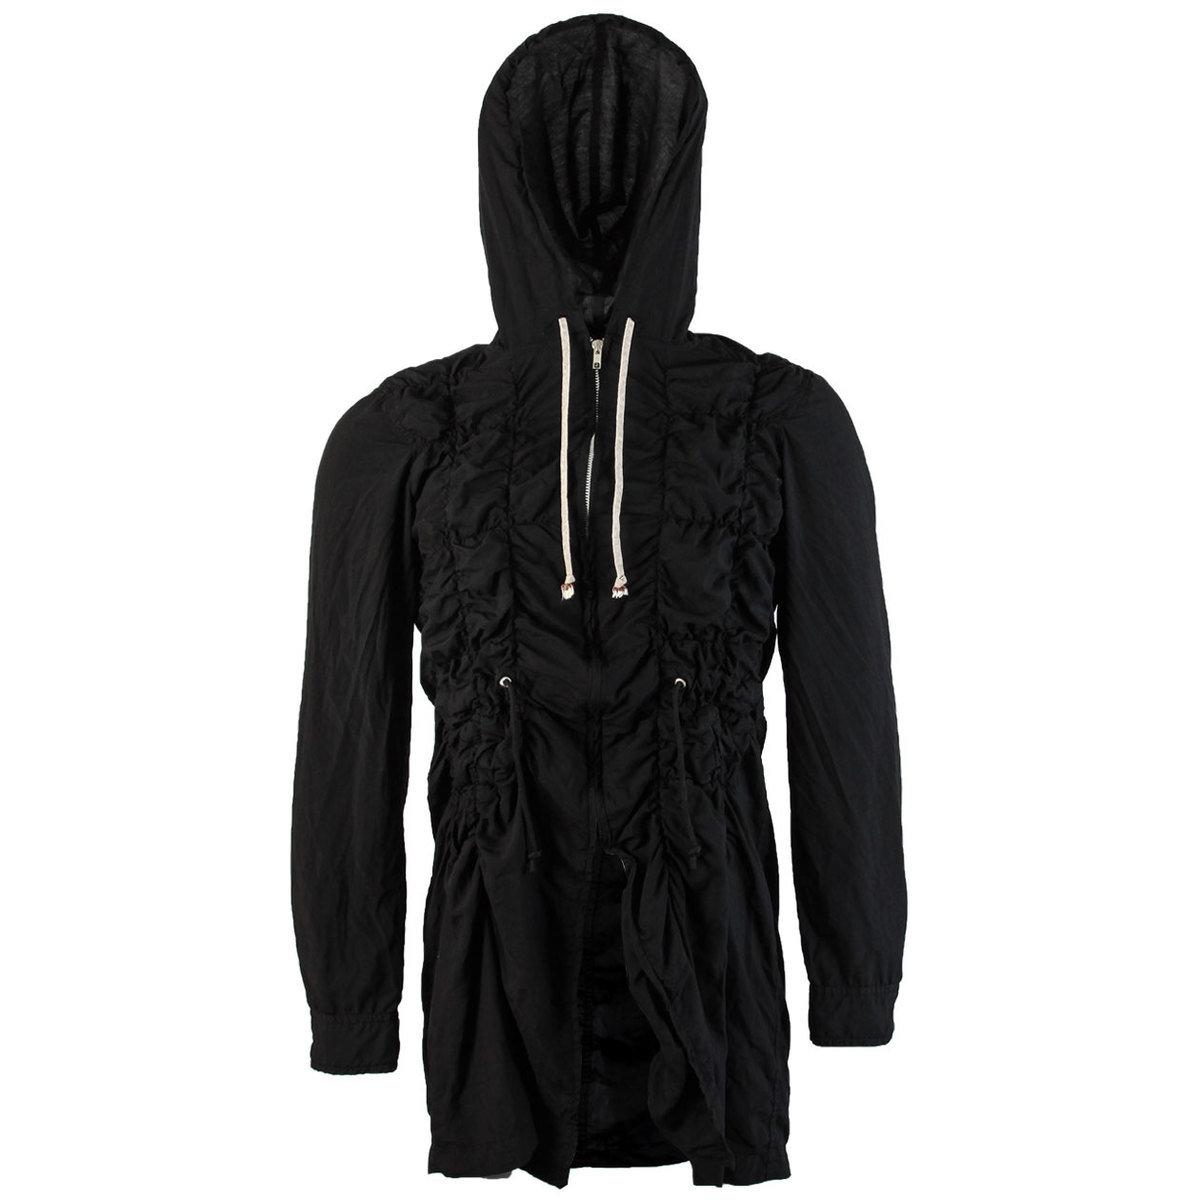 Comme des Garçons Hooded Drawstring Jacket in Black for Men - Lyst